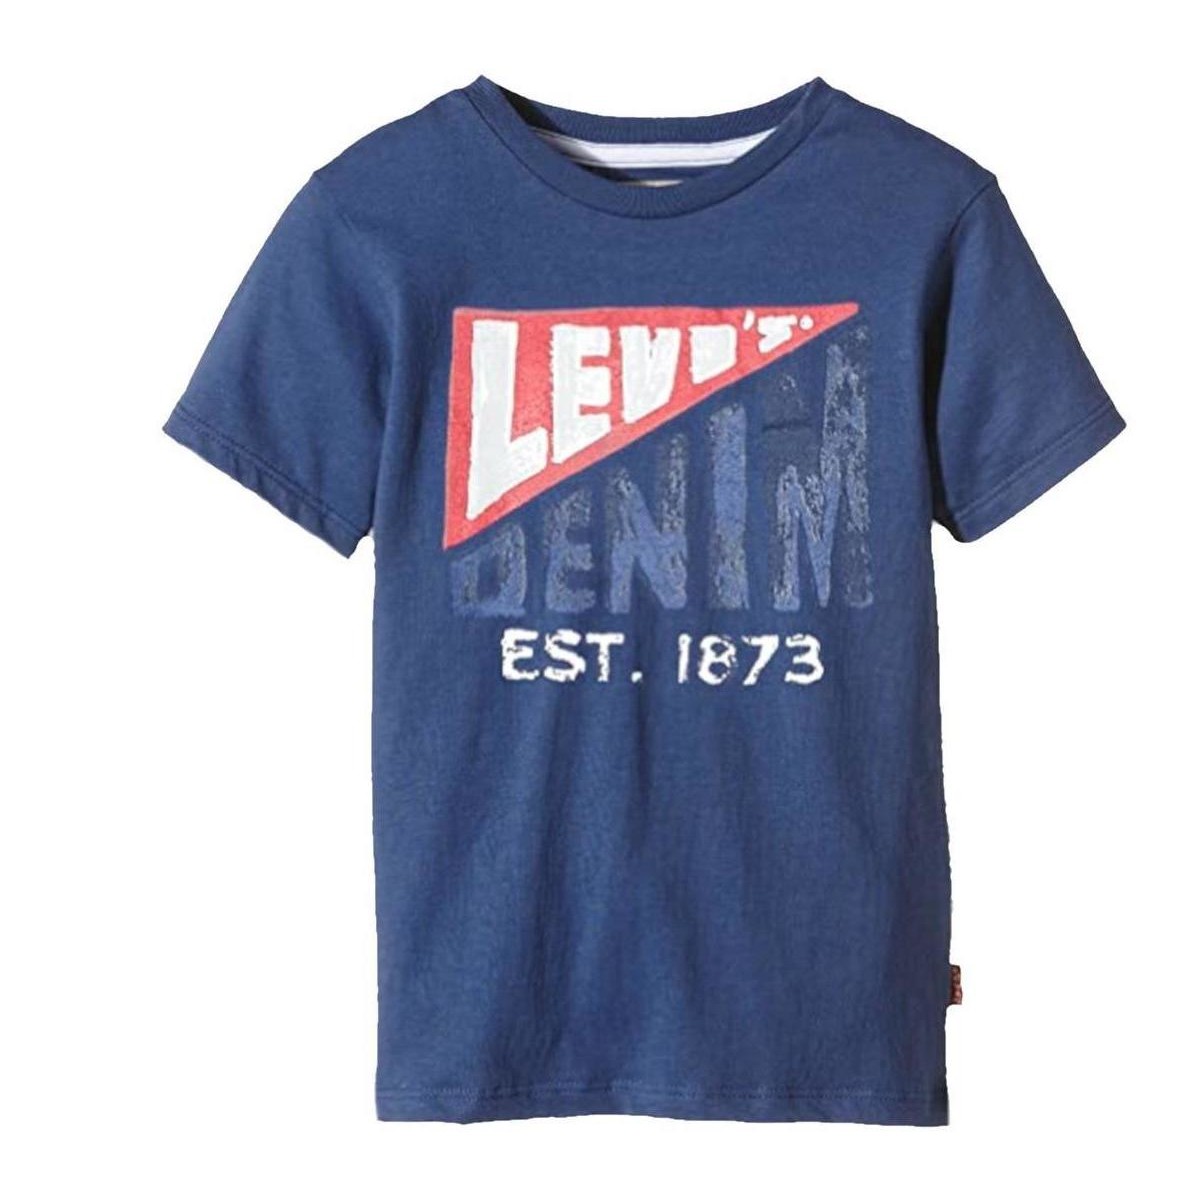 vaatteet Pojat Lyhythihainen t-paita Levi's  Sininen